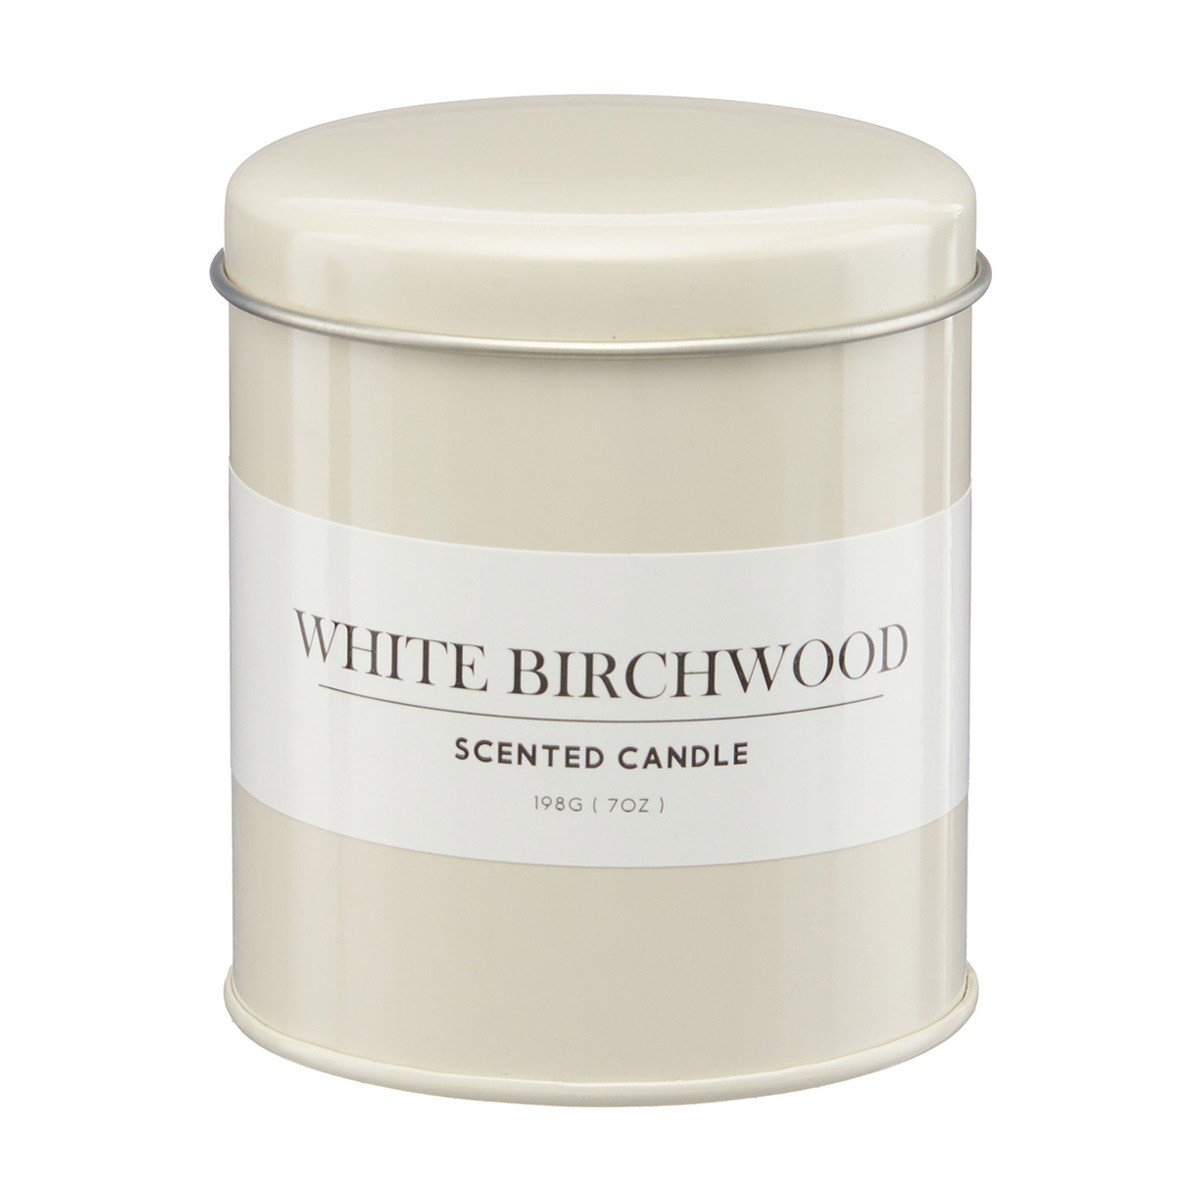 Decorative White Birchwood Scented Tin Candle, 7 oz